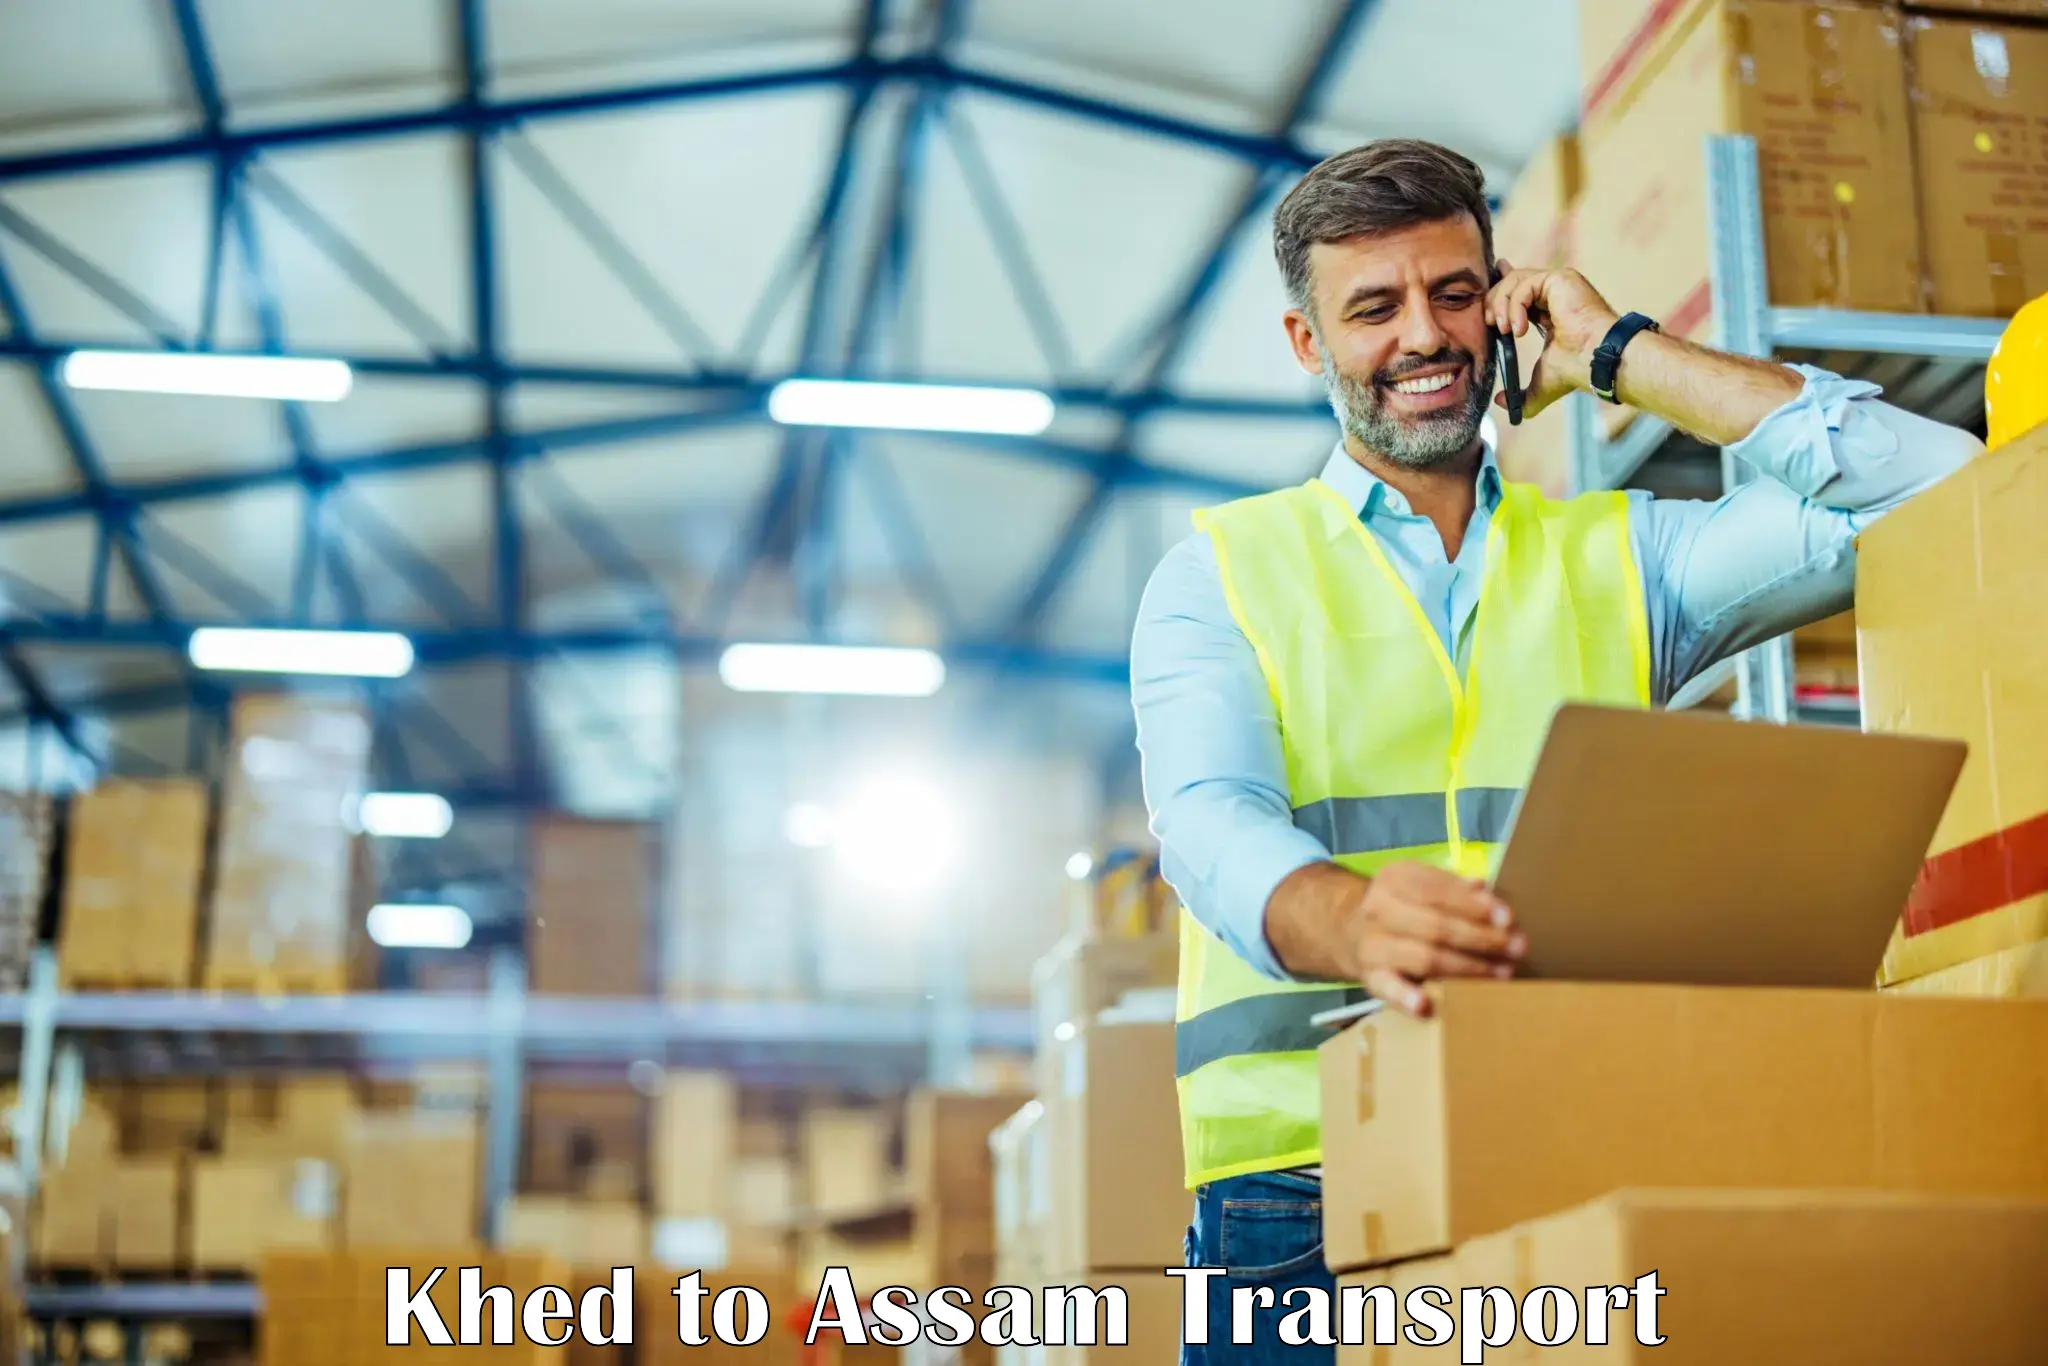 Daily parcel service transport Khed to Badarpur Karimganj